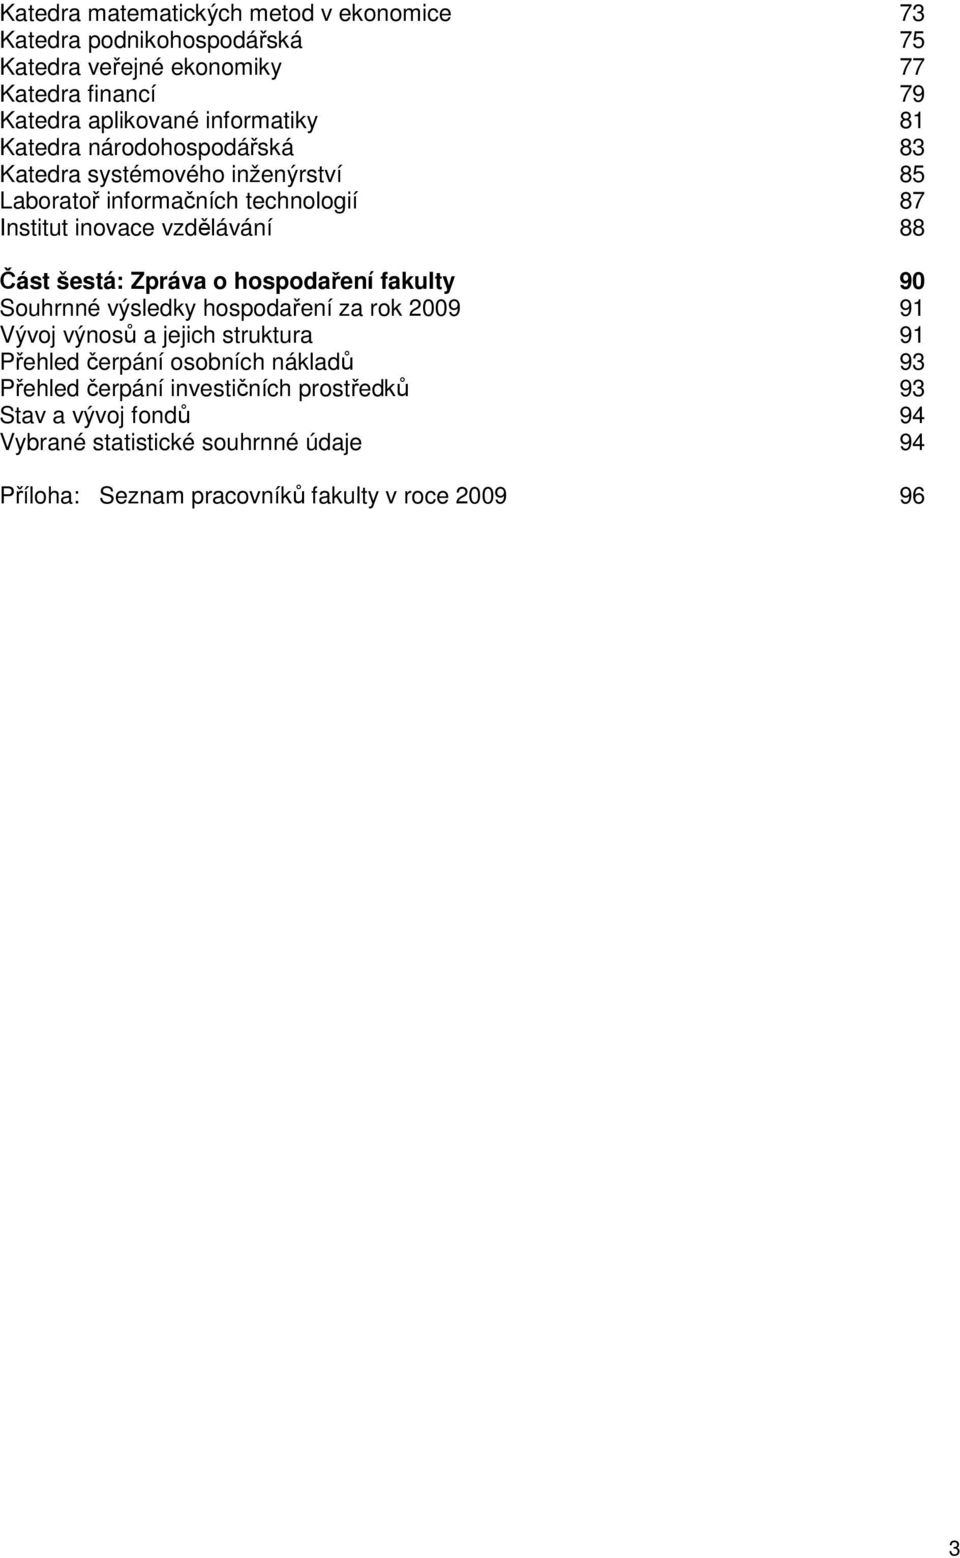 Část šestá: Zpráva o hospodaření fakulty 90 Souhrnné výsledky hospodaření za rok 2009 91 Vývoj výnosů a jejich struktura 91 Přehled čerpání osobních